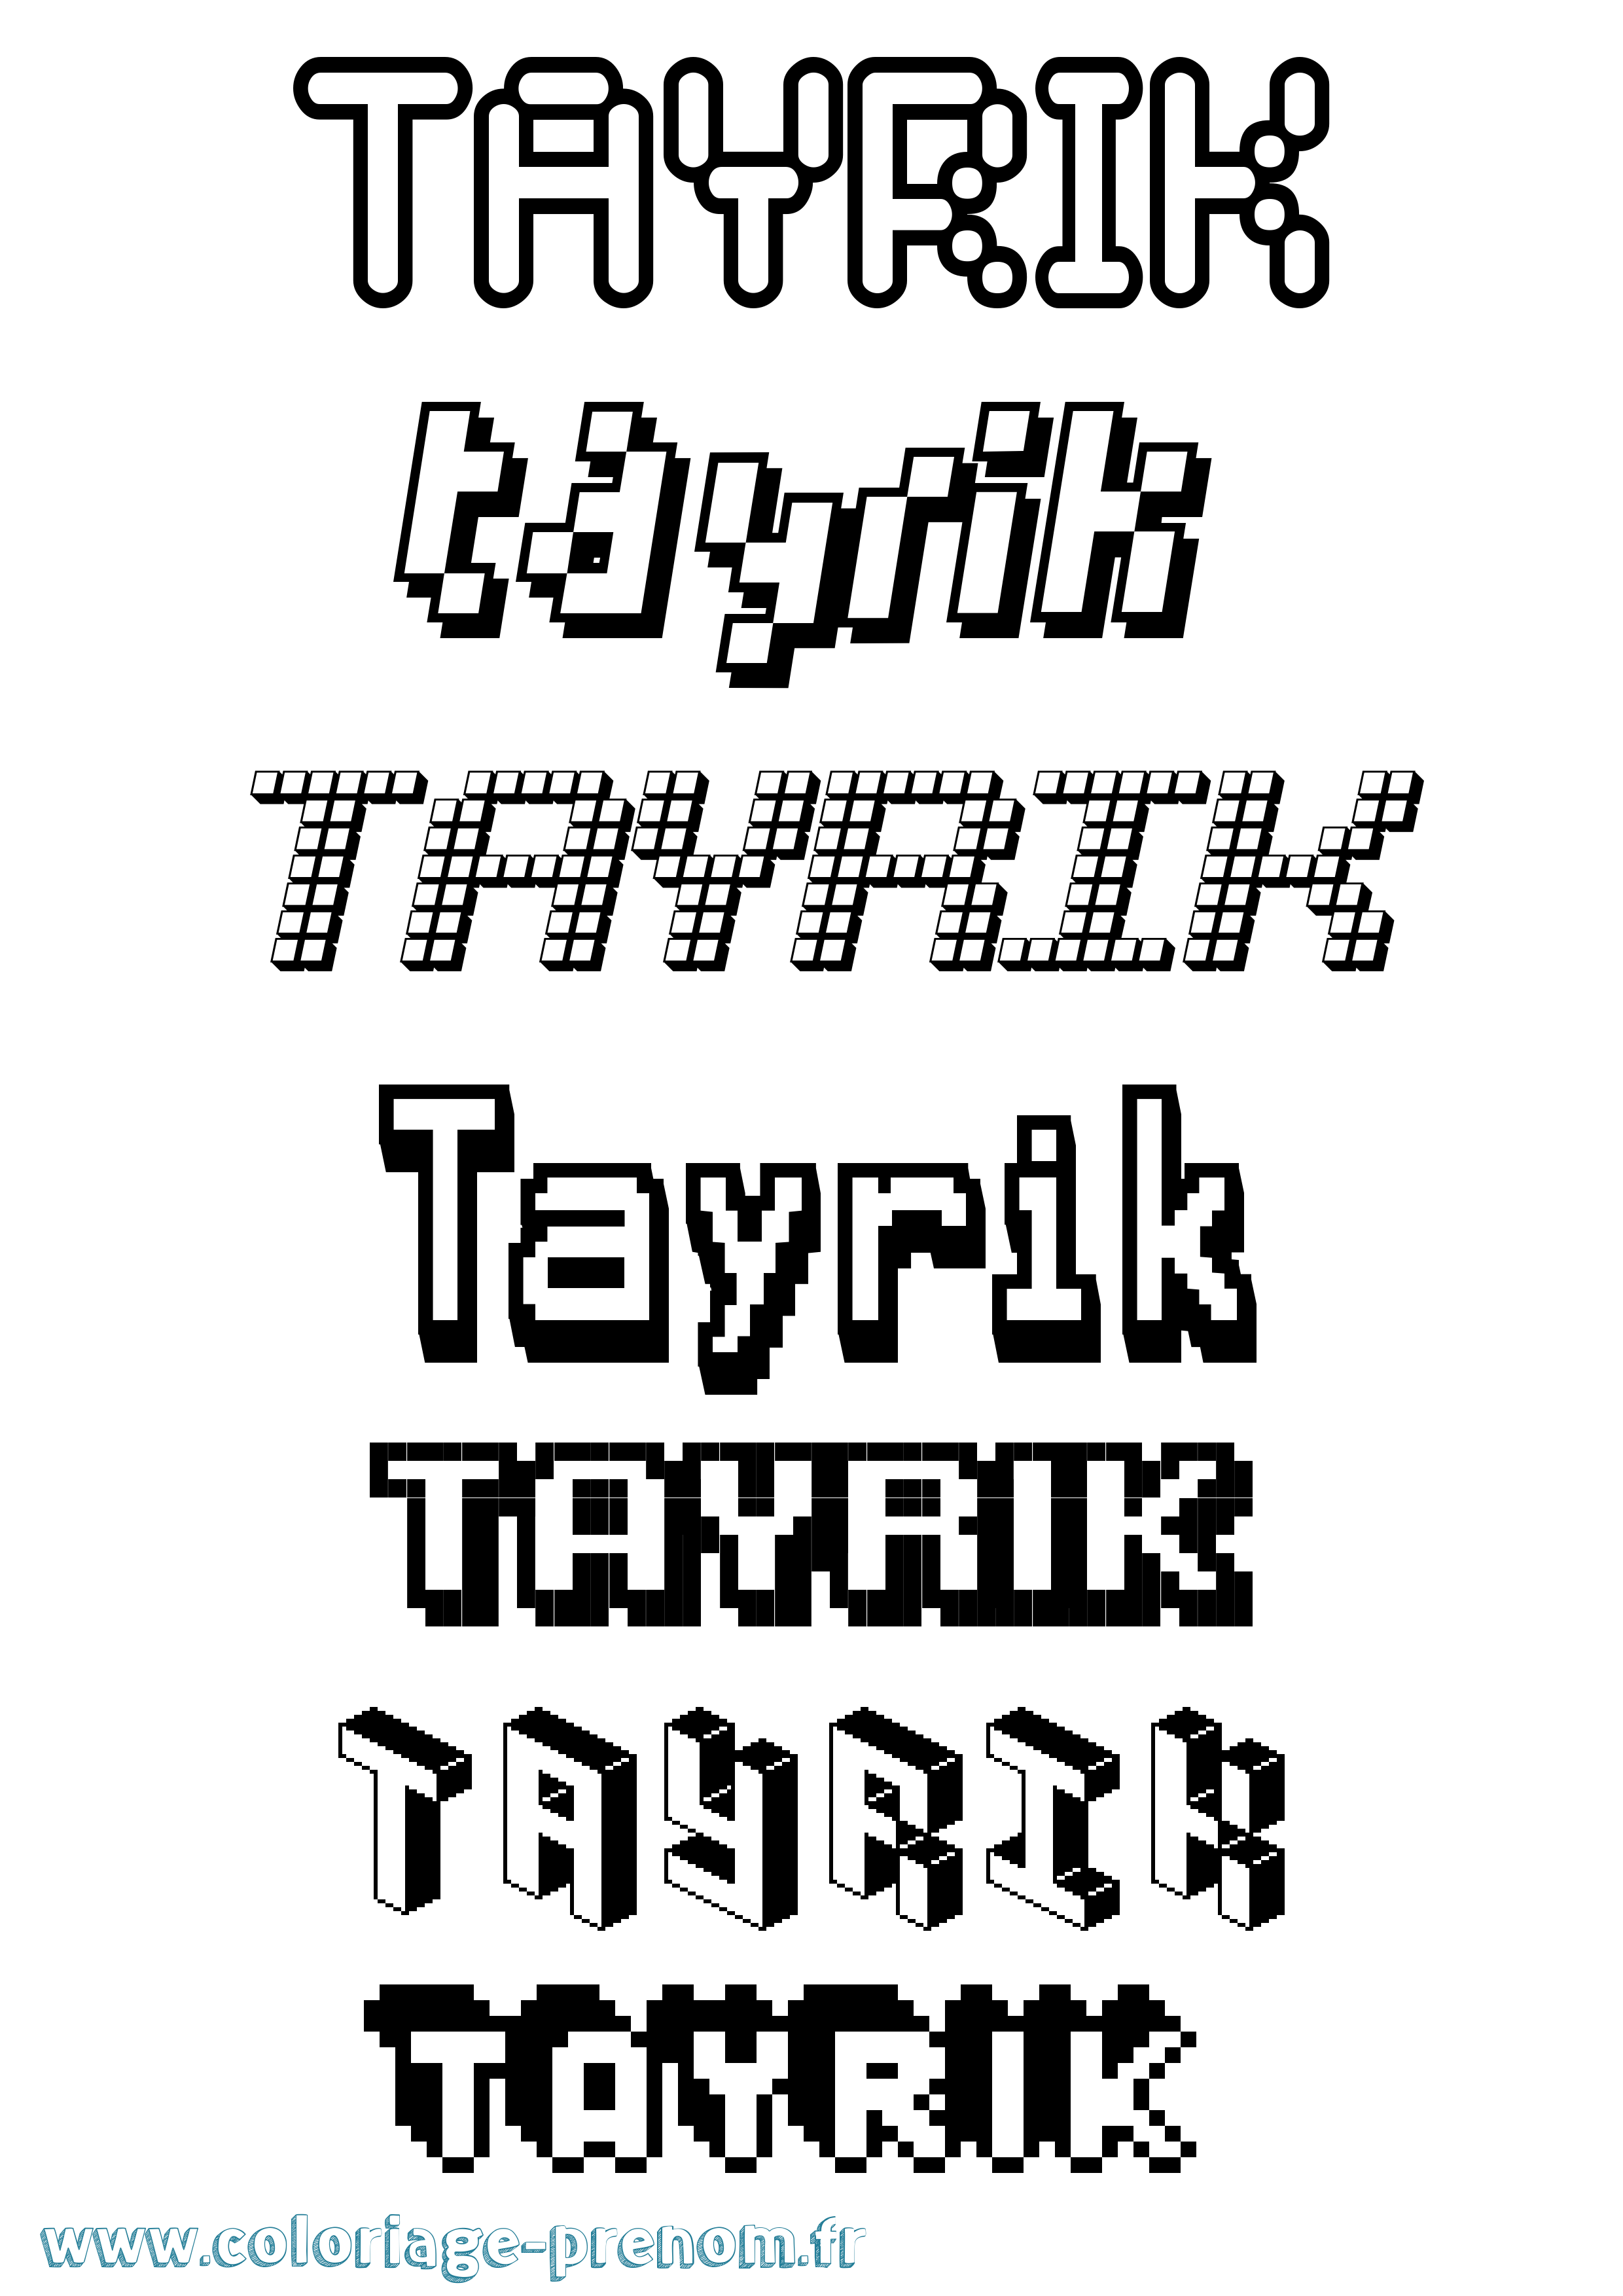 Coloriage prénom Tayrik Pixel